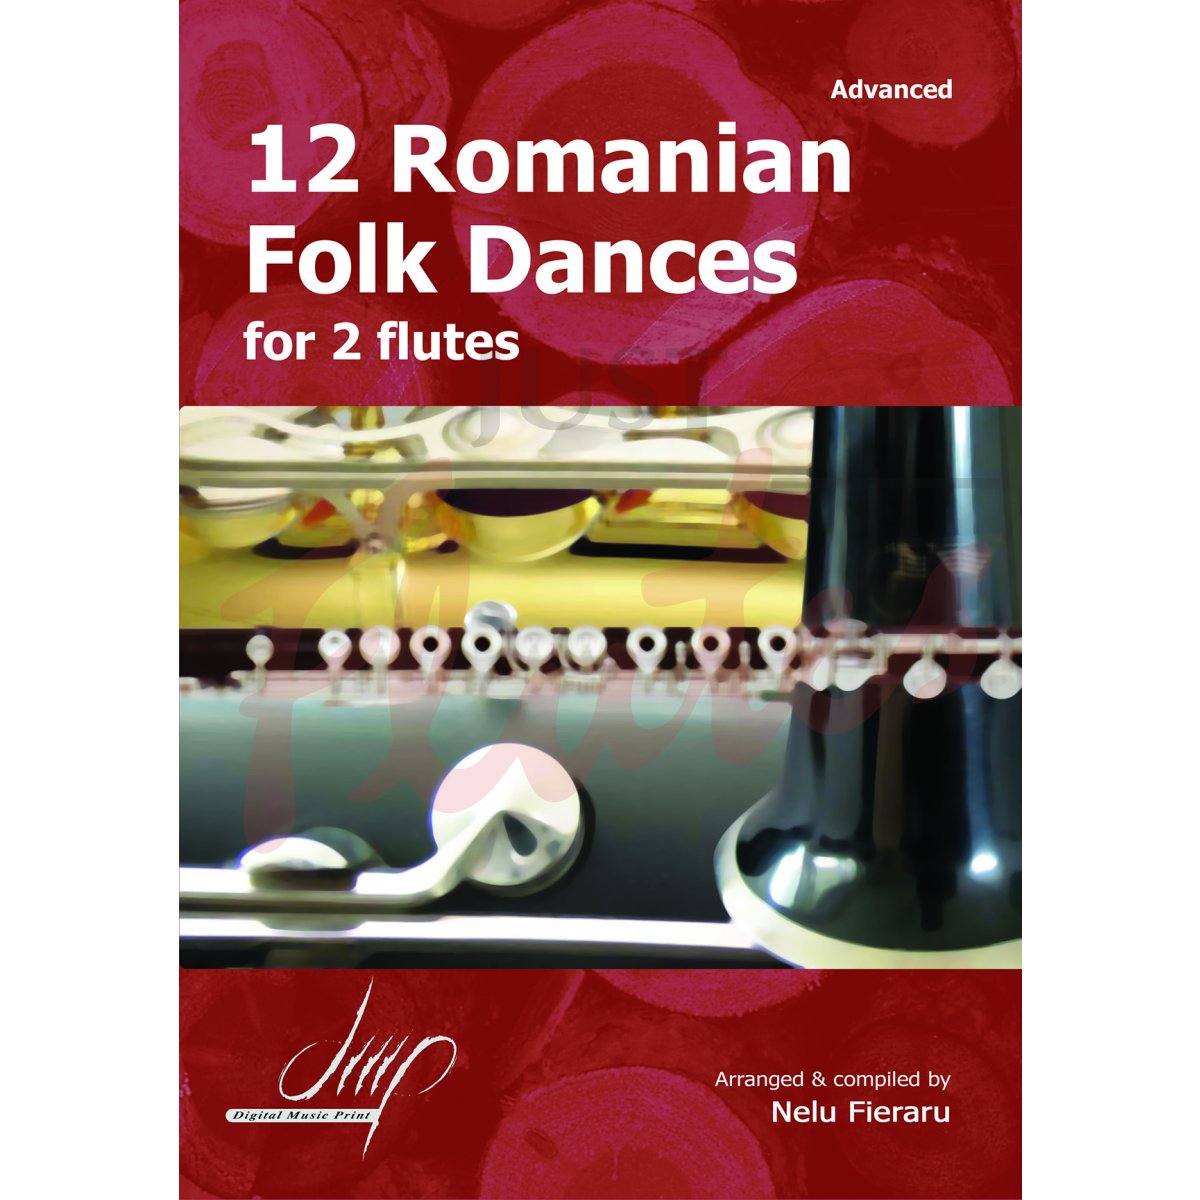 12 Romanian Folk dances for 2 flutes